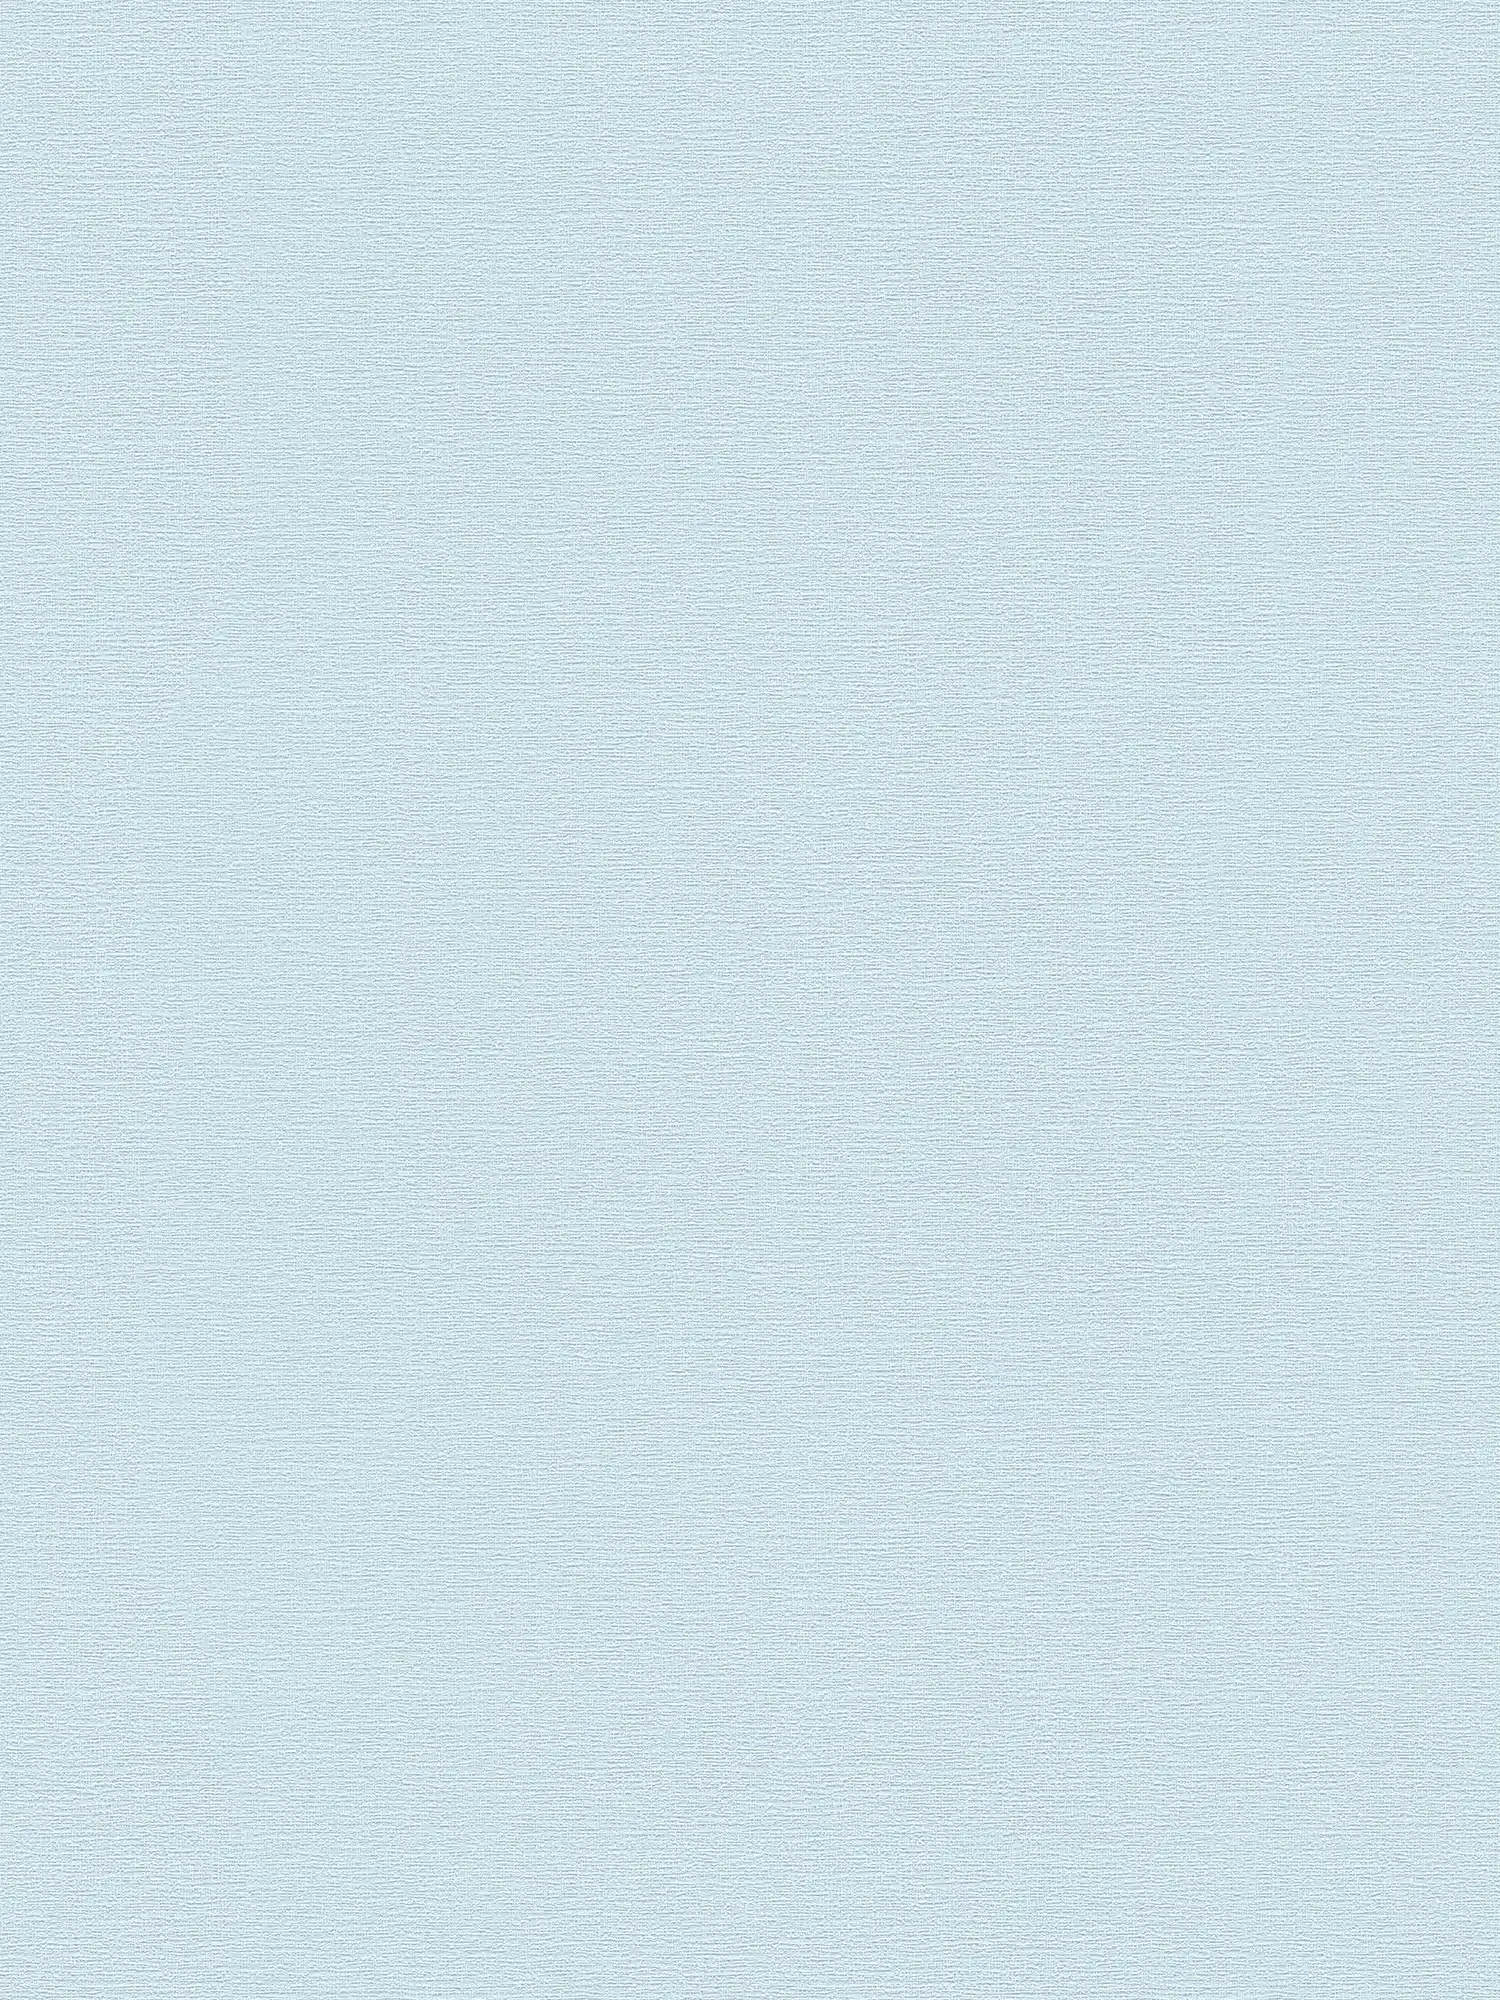 Papel pintado no tejido azul claro liso mate con diseño texturizado
